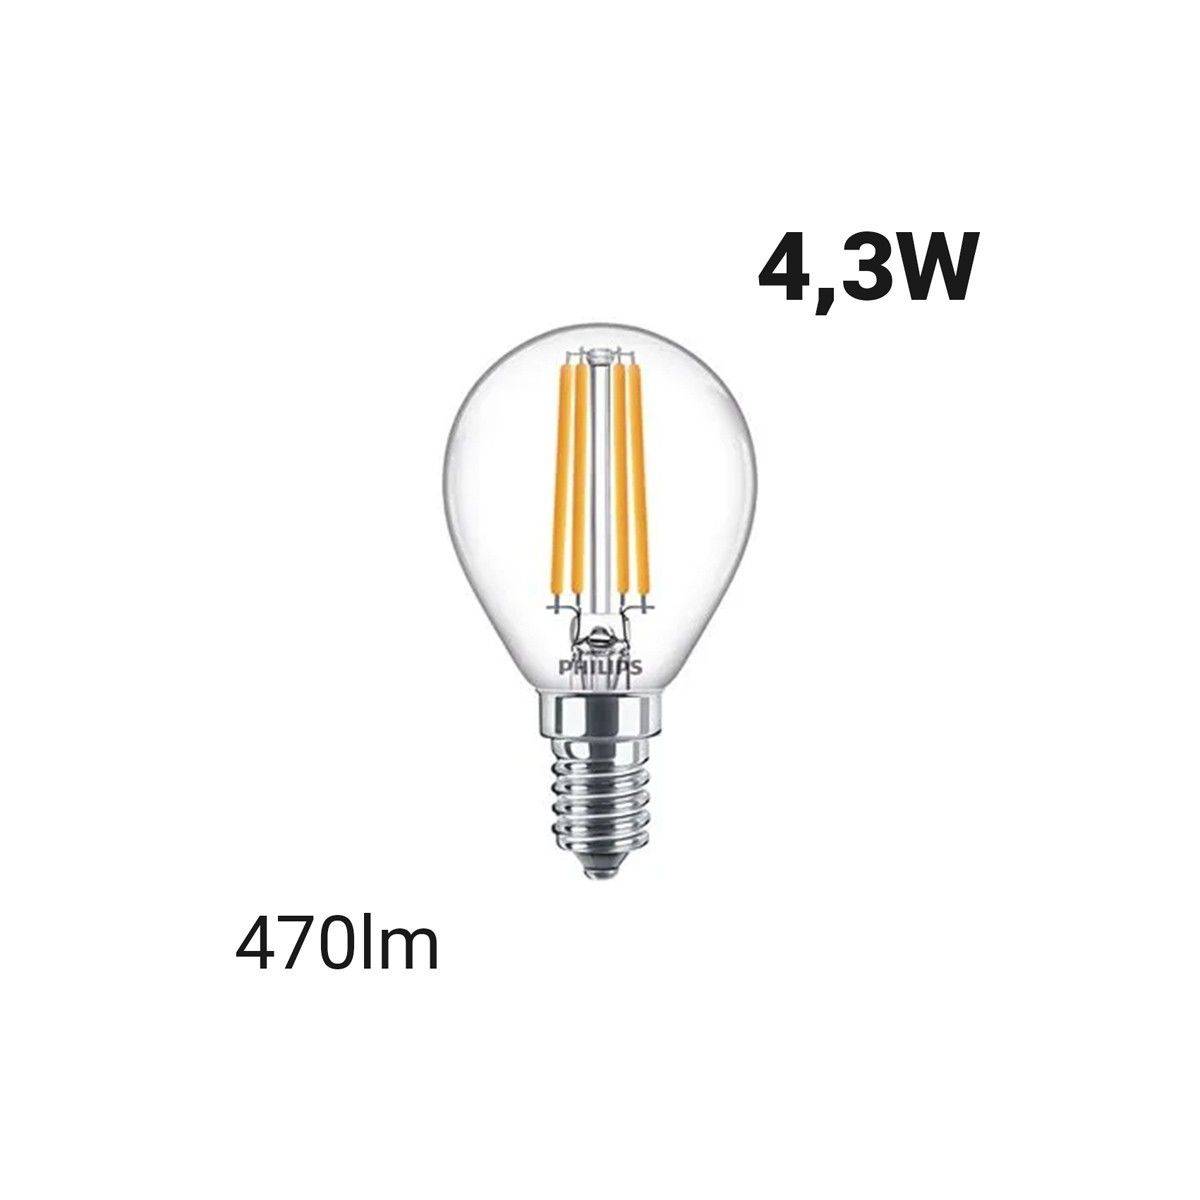 Comprar bombillas de filamento E14 G45 5W | Bombillas LED